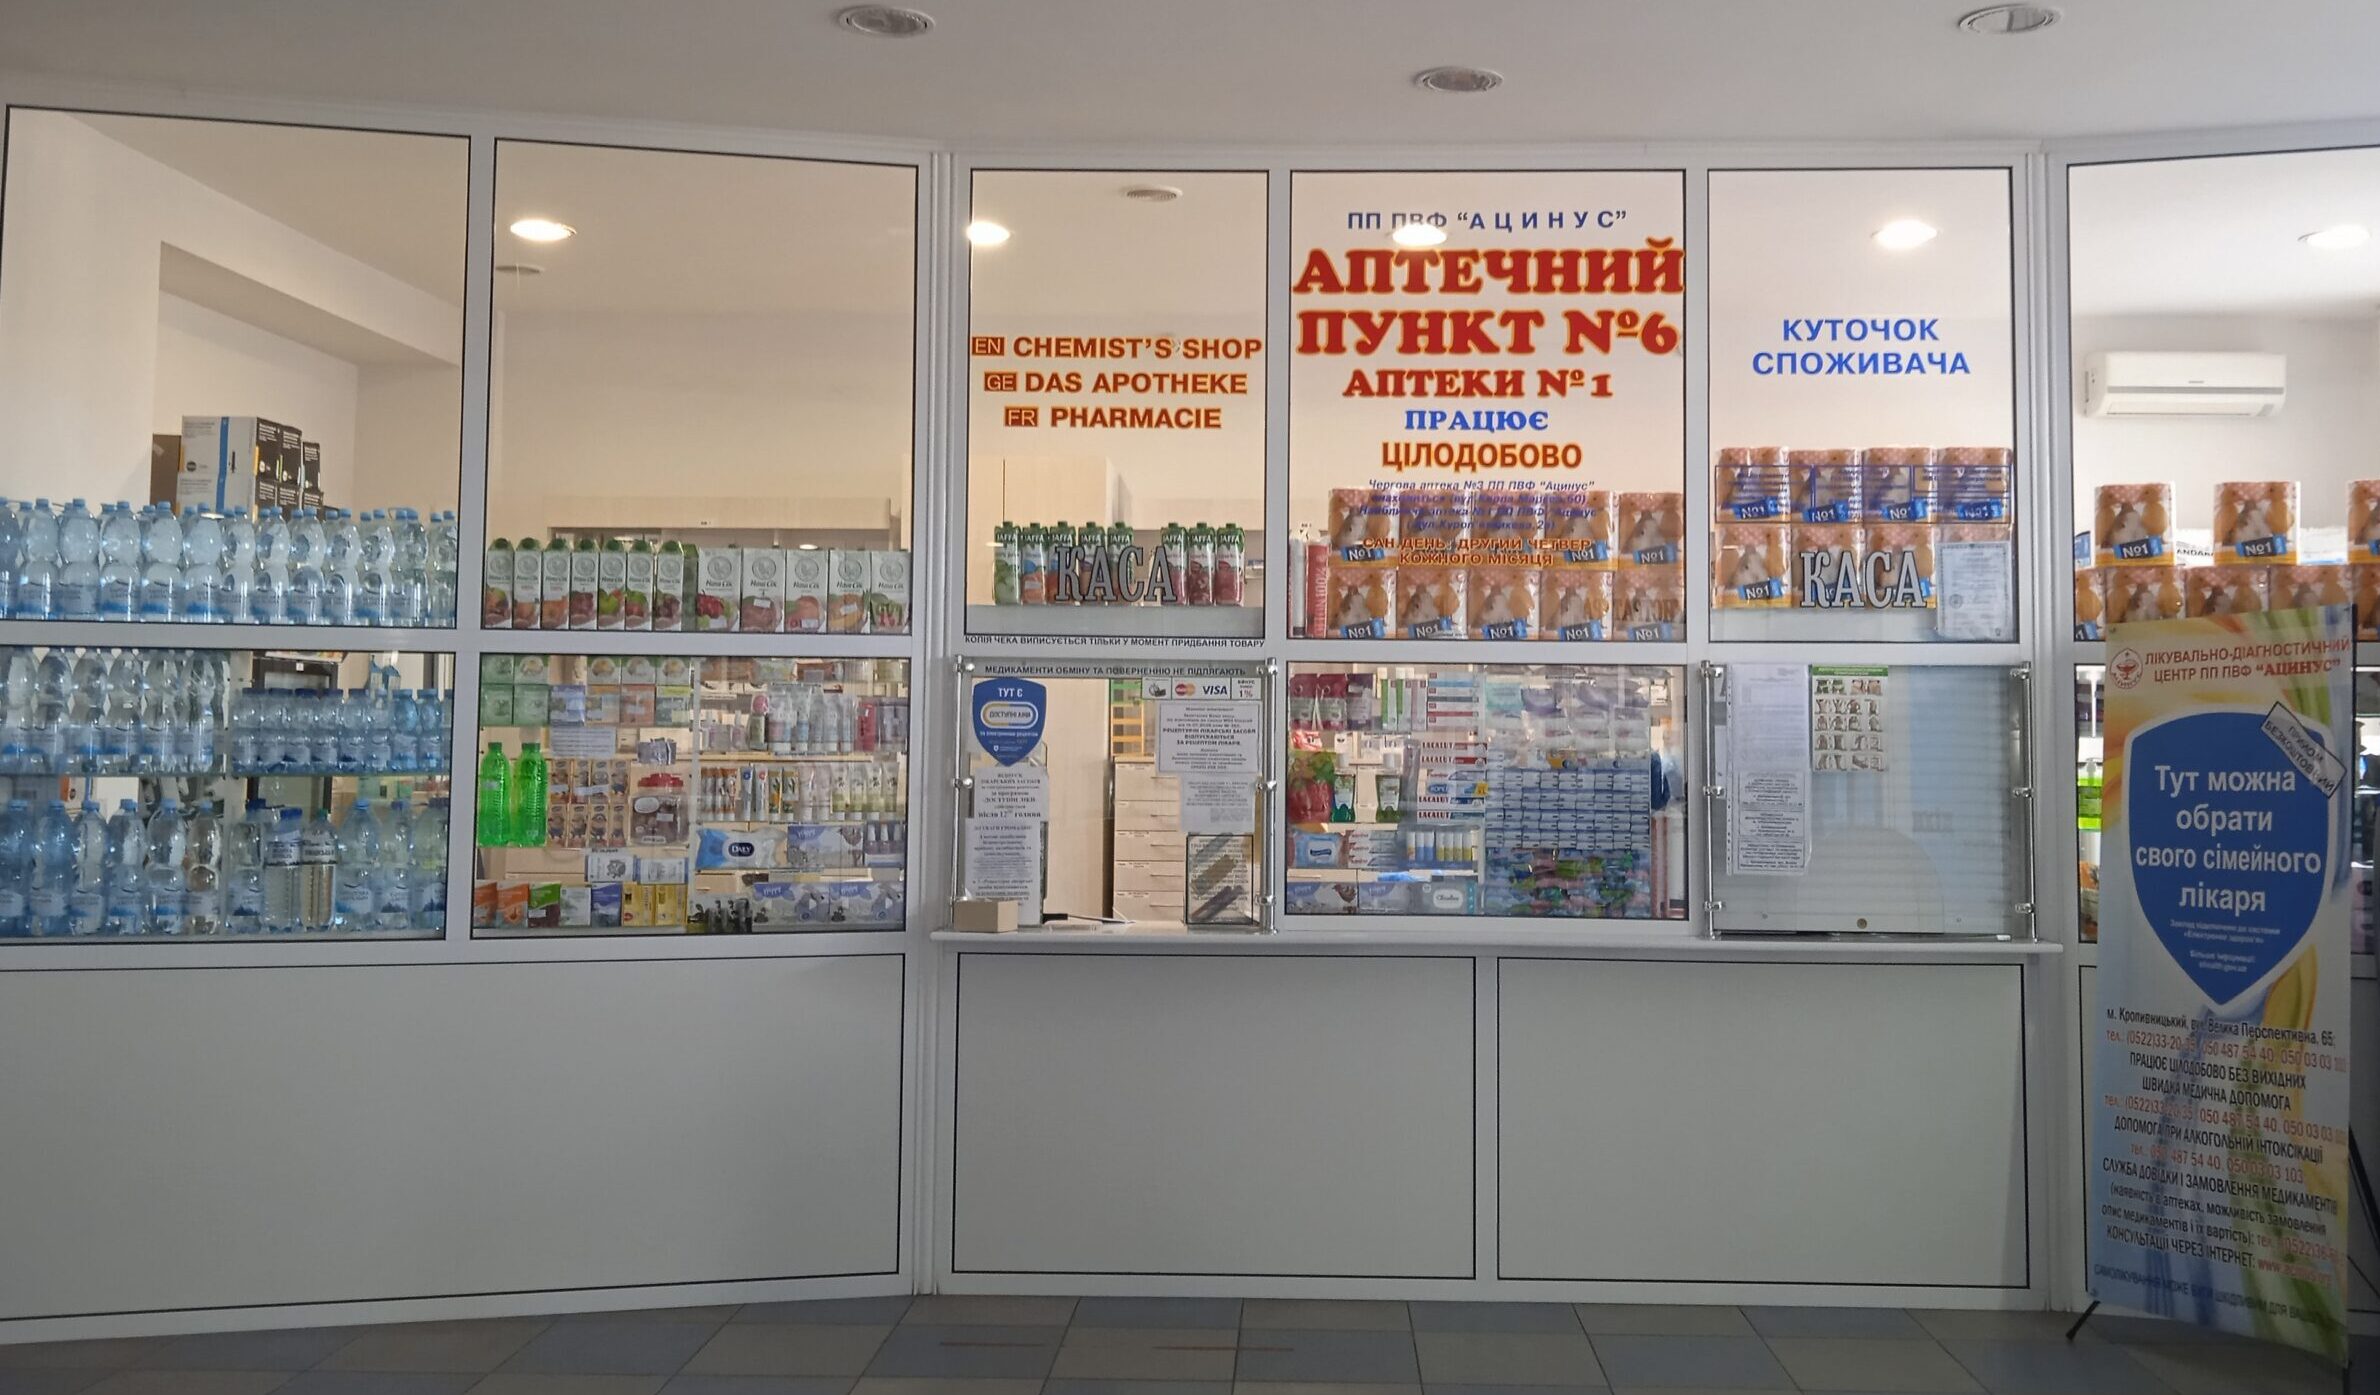 Аптечный пункт № 6 аптеки № 1 ЧП ЧПФ «Ацинус»